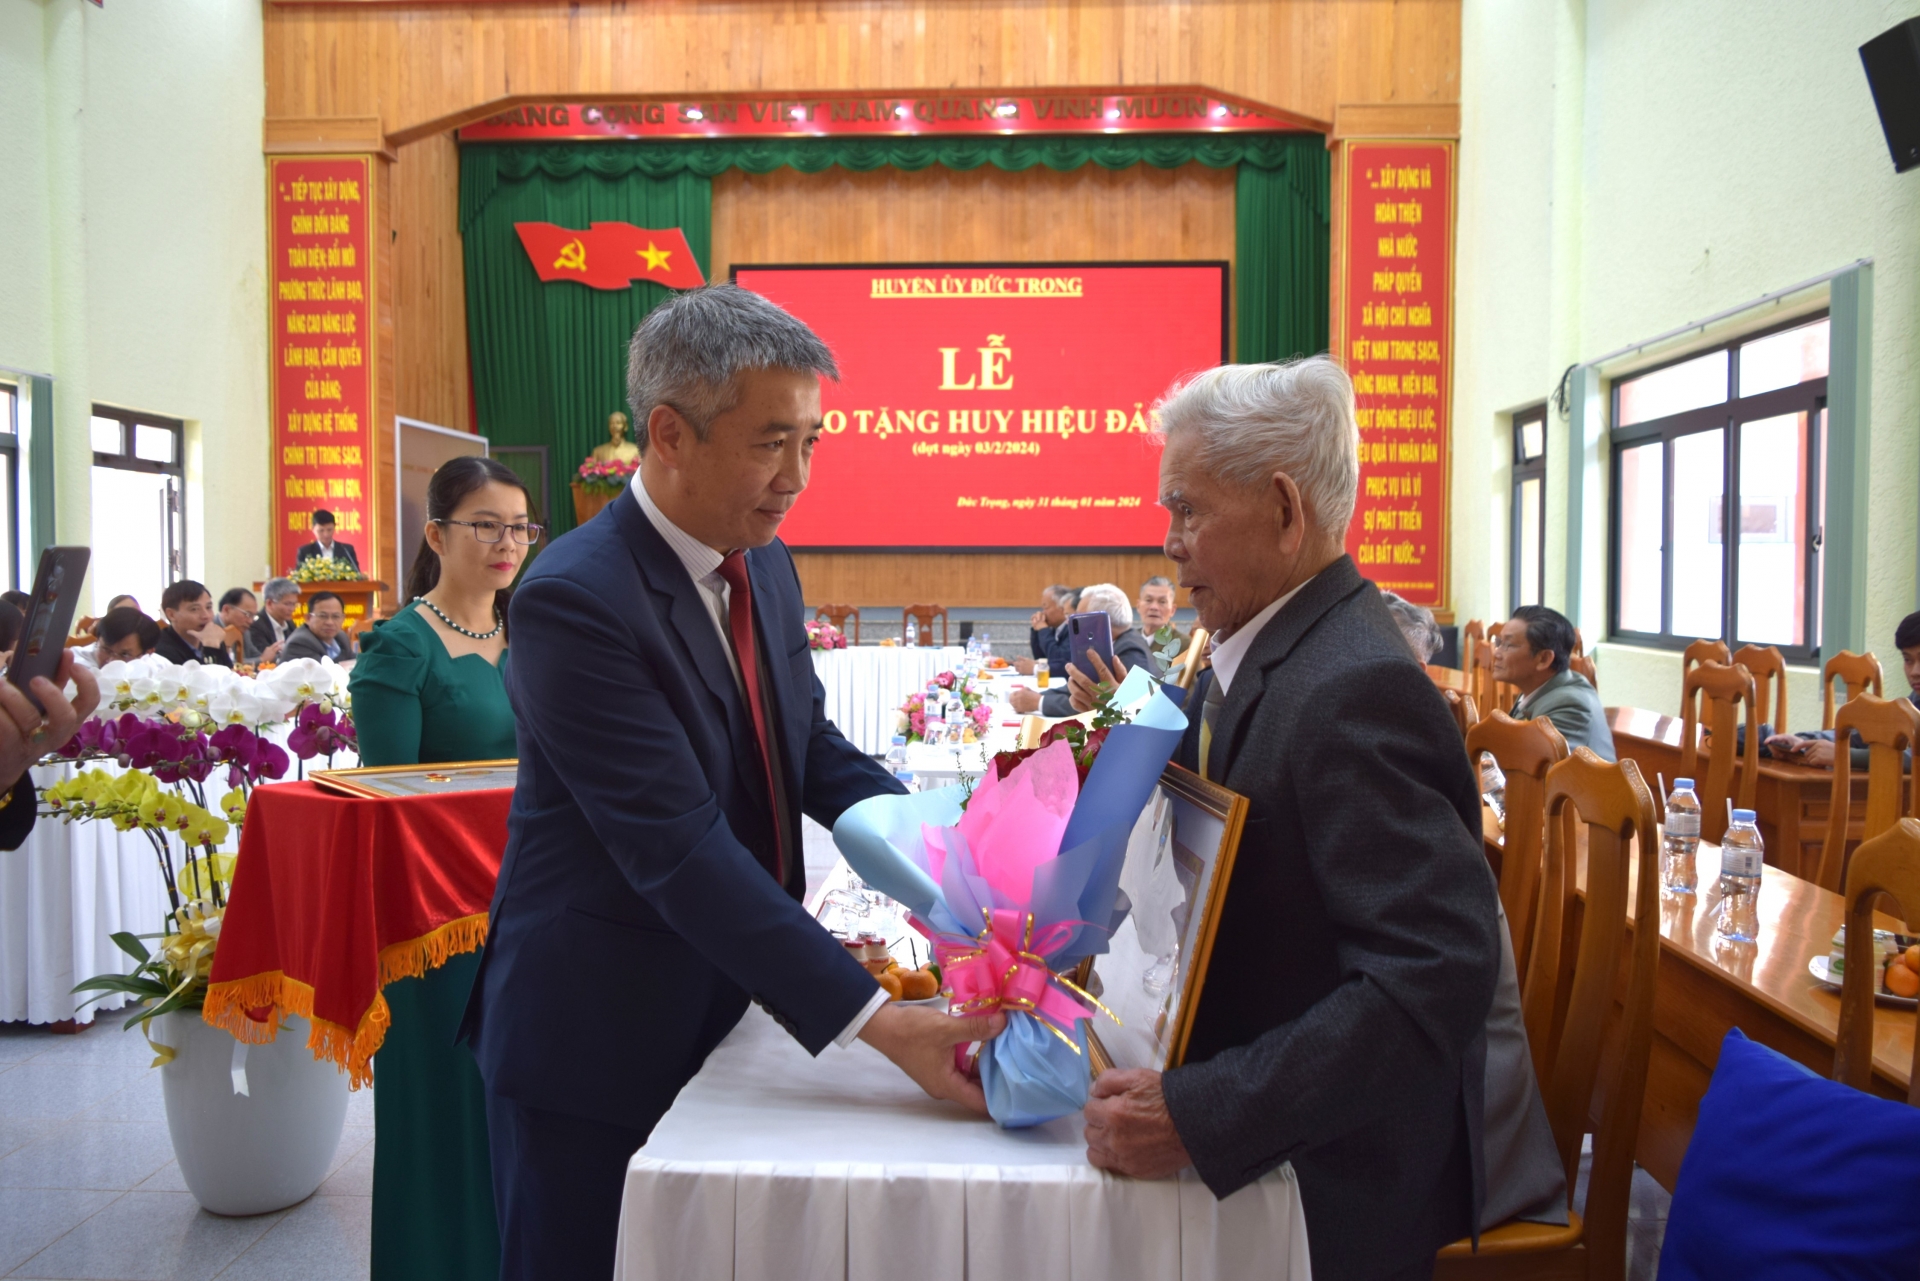 Đồng chí Bùi Sơn Điền - Bí thư Huyện ủy, trao huy hiệu 65 năm tuổi Đảng cho đảng viên Bùi Quang Dục (Đảng bộ xã Tân Hội)